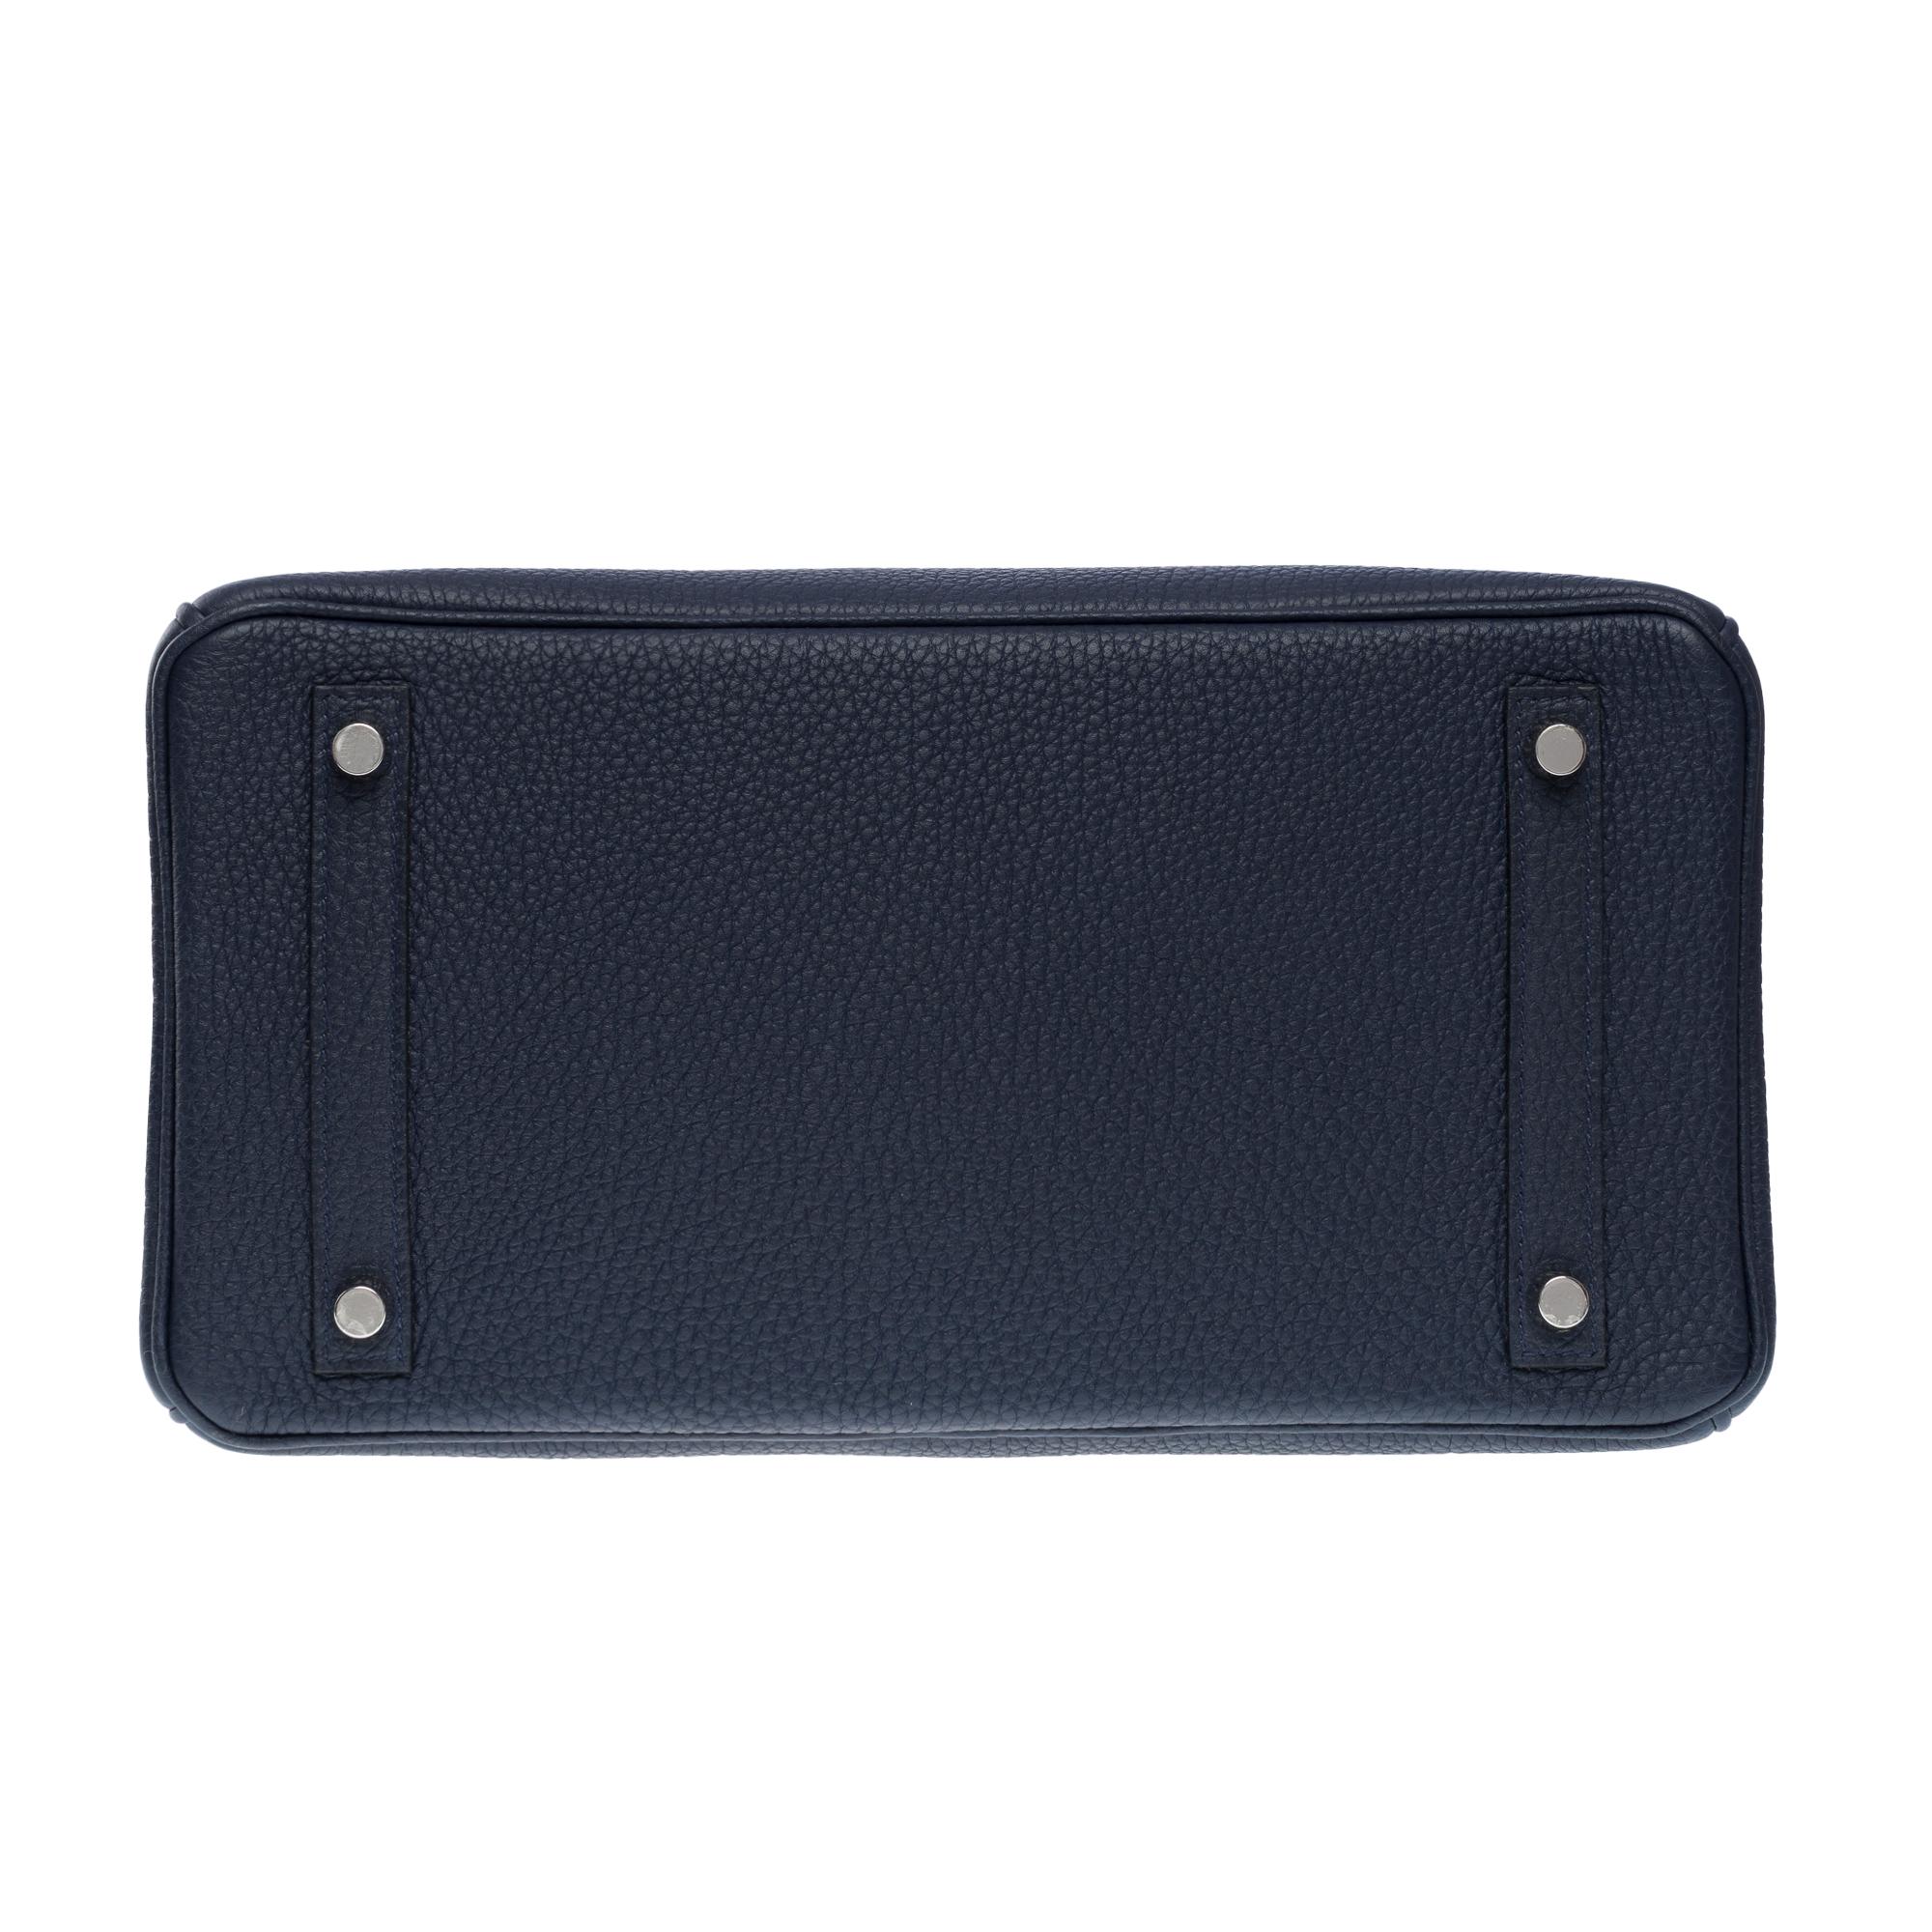 Hermes Birkin 30 handbag in Bleu nuit Togo leather, SHW For Sale 7